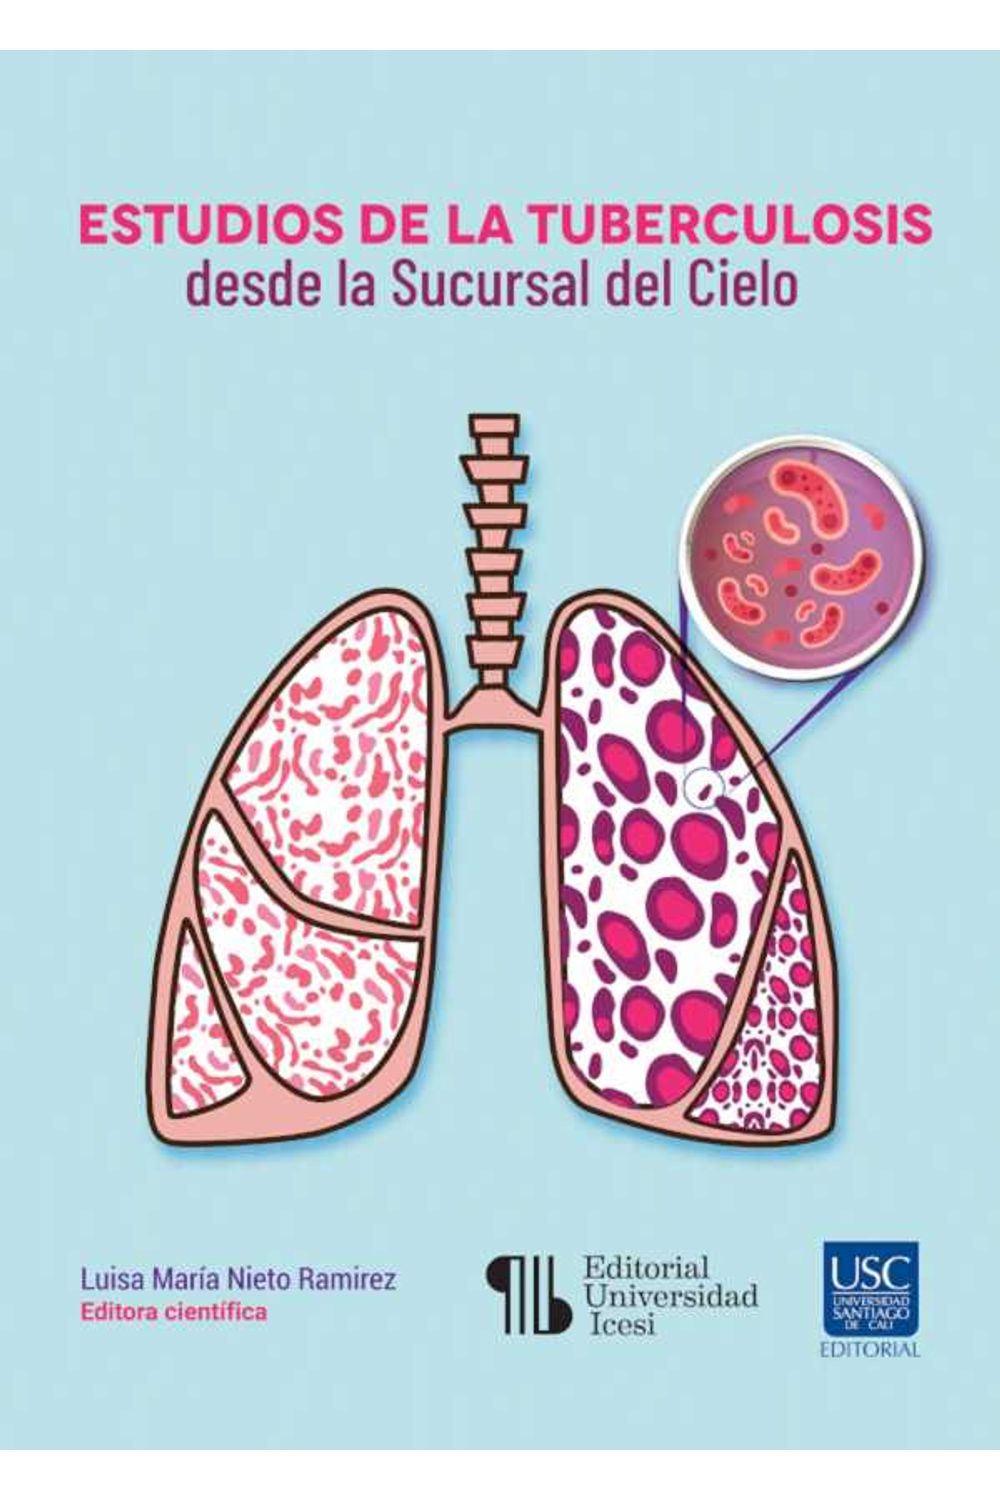 bw-estudios-de-la-tuberculosis-desde-la-sucursal-del-cielo-editorial-universidad-icesi-9789585147256